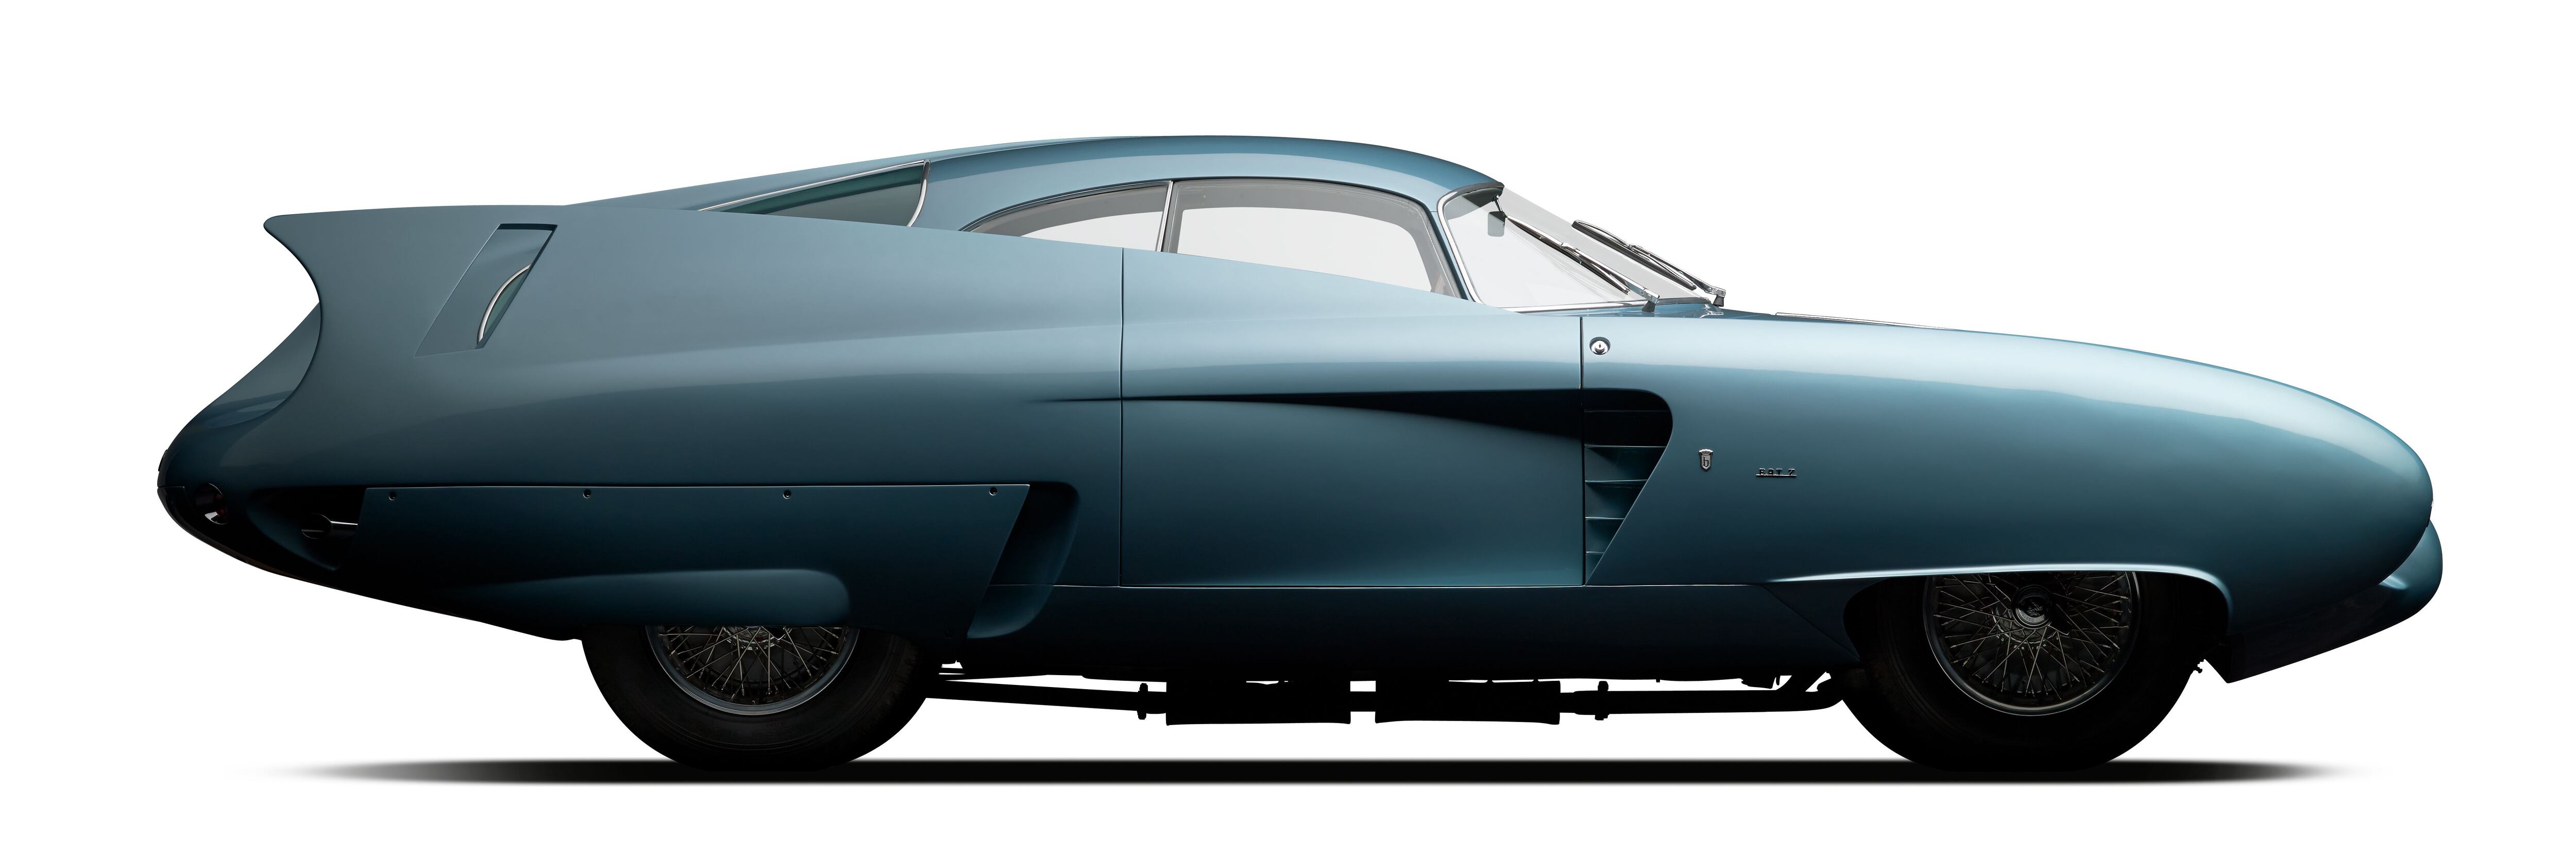 Un Alfa Romeo BAT Car 7, de 1954, diseñado por Franco Scaglione. El coche es propiedad de la Colección Rob y Melanie Walton. / MICHAEL FURMAN